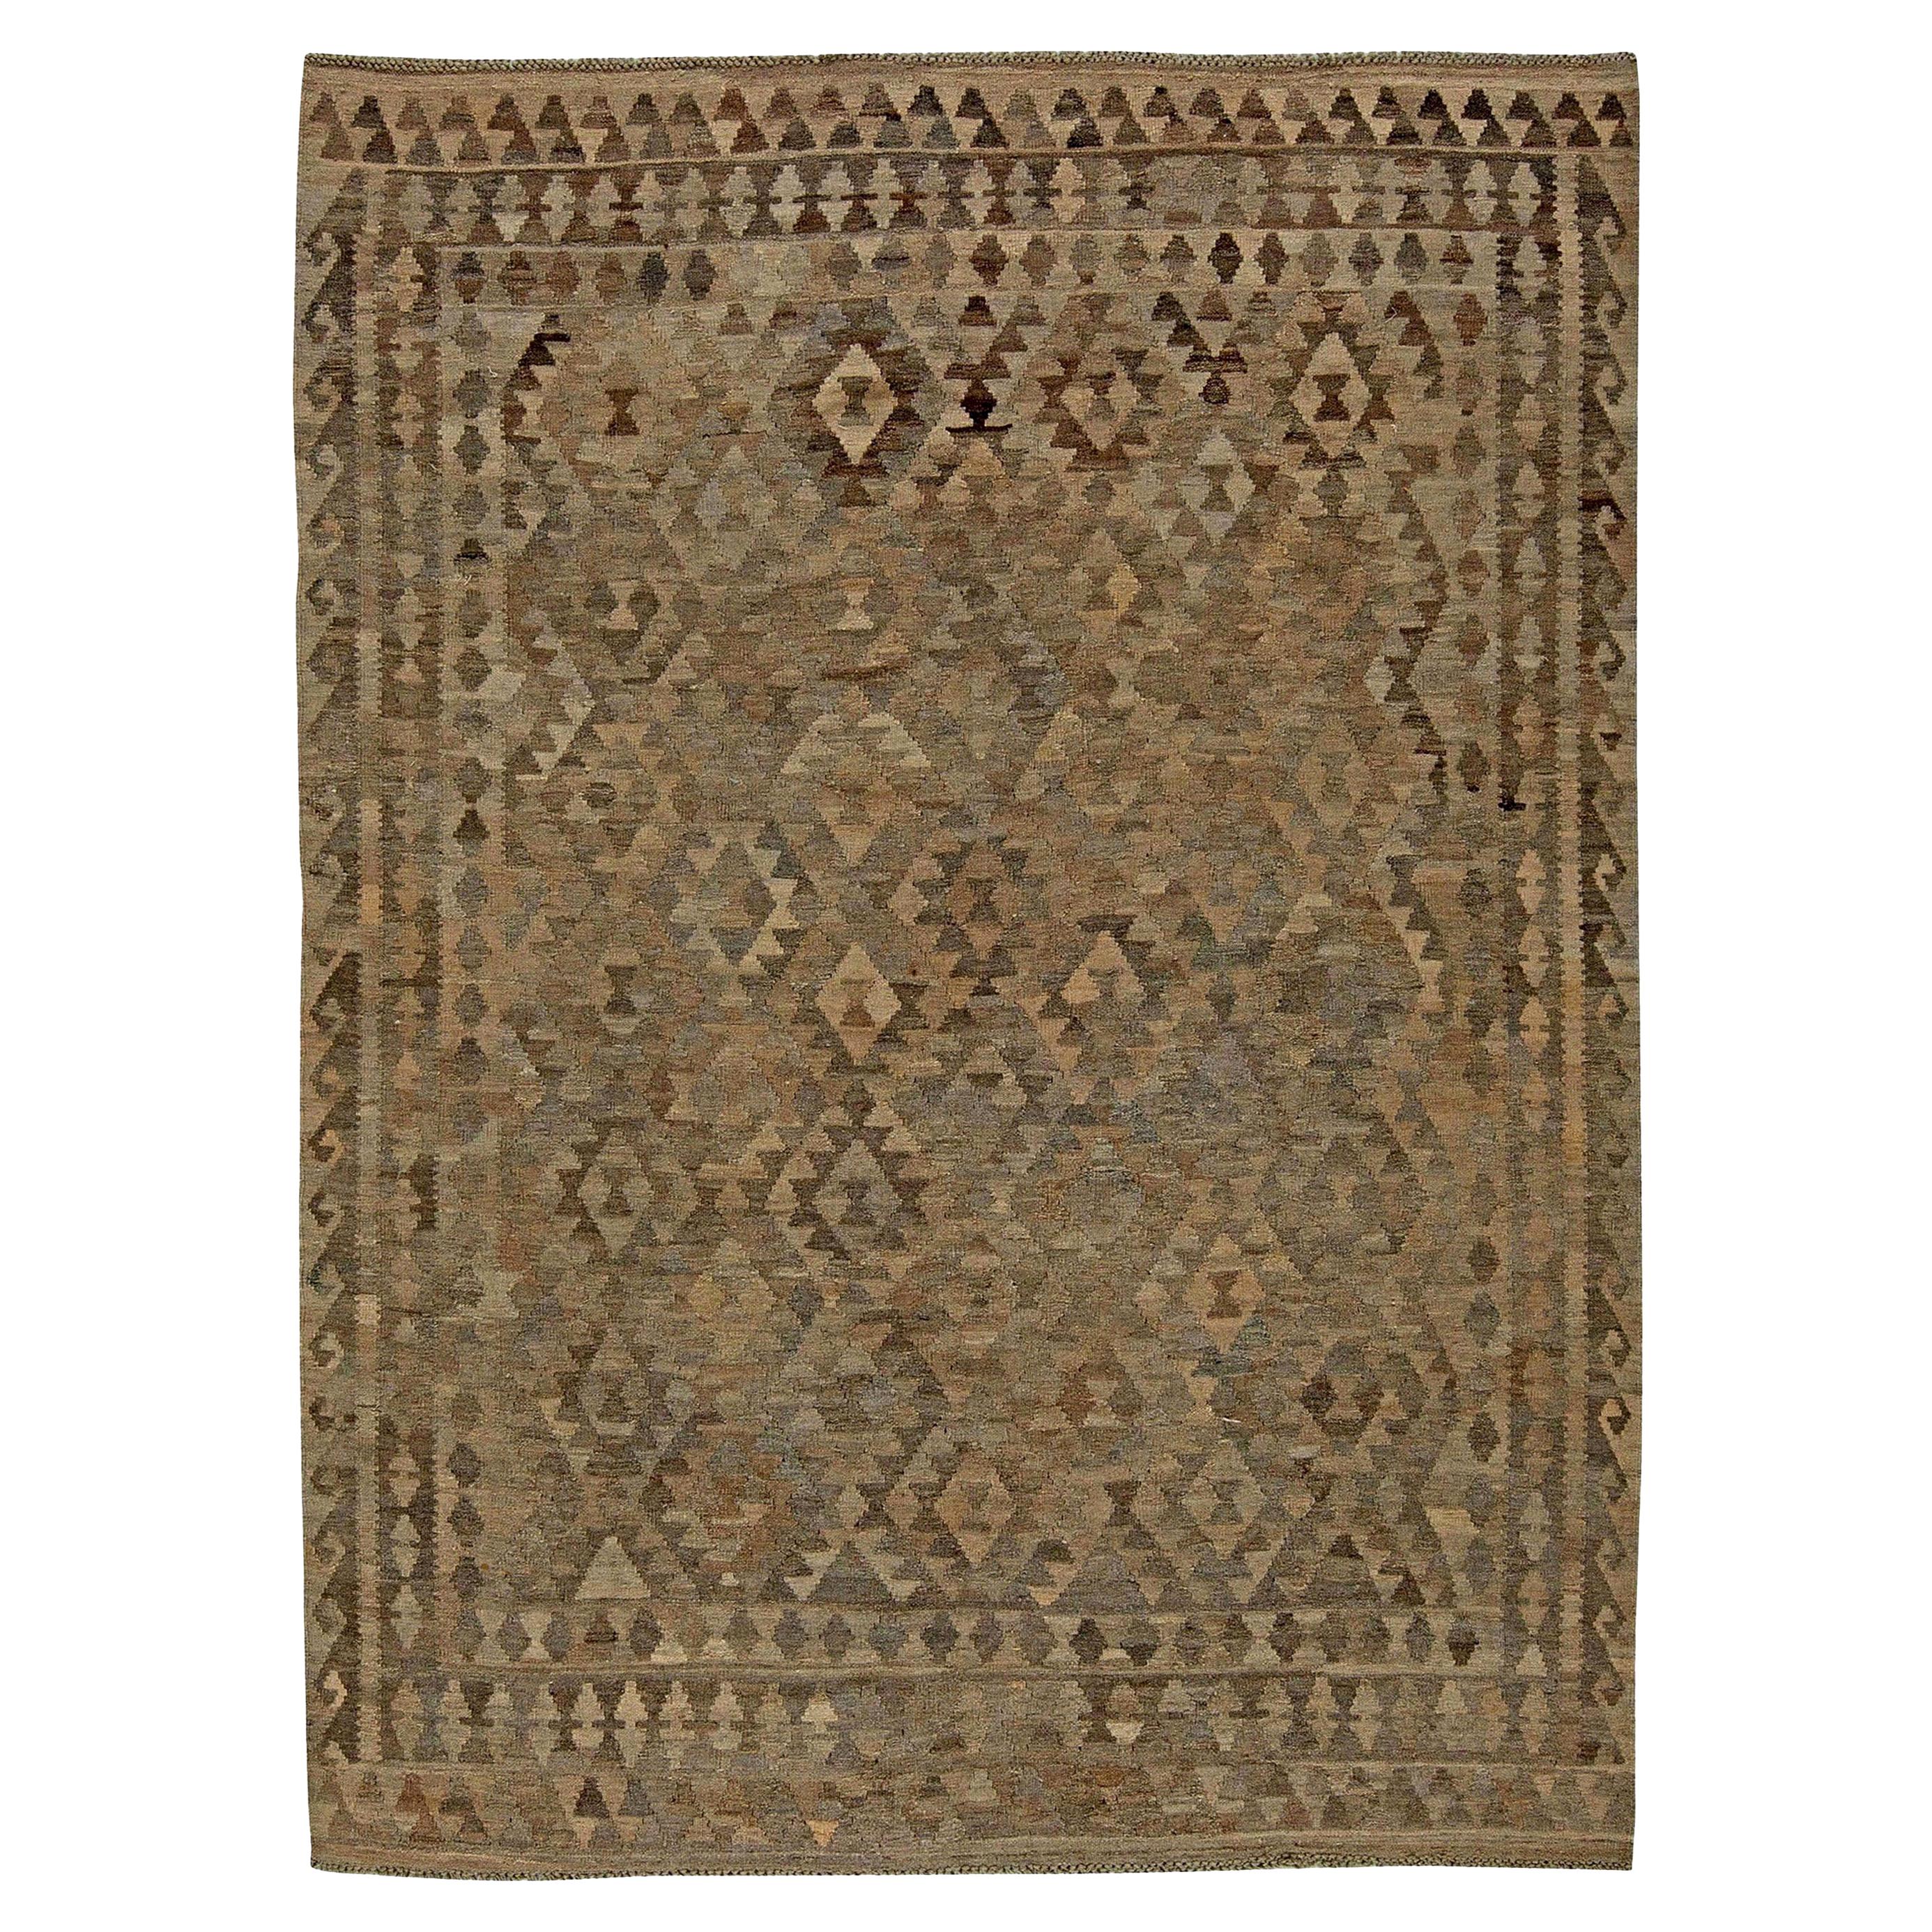 Mid-20th century Turkish Geometric Kilim Wool Rug For Sale